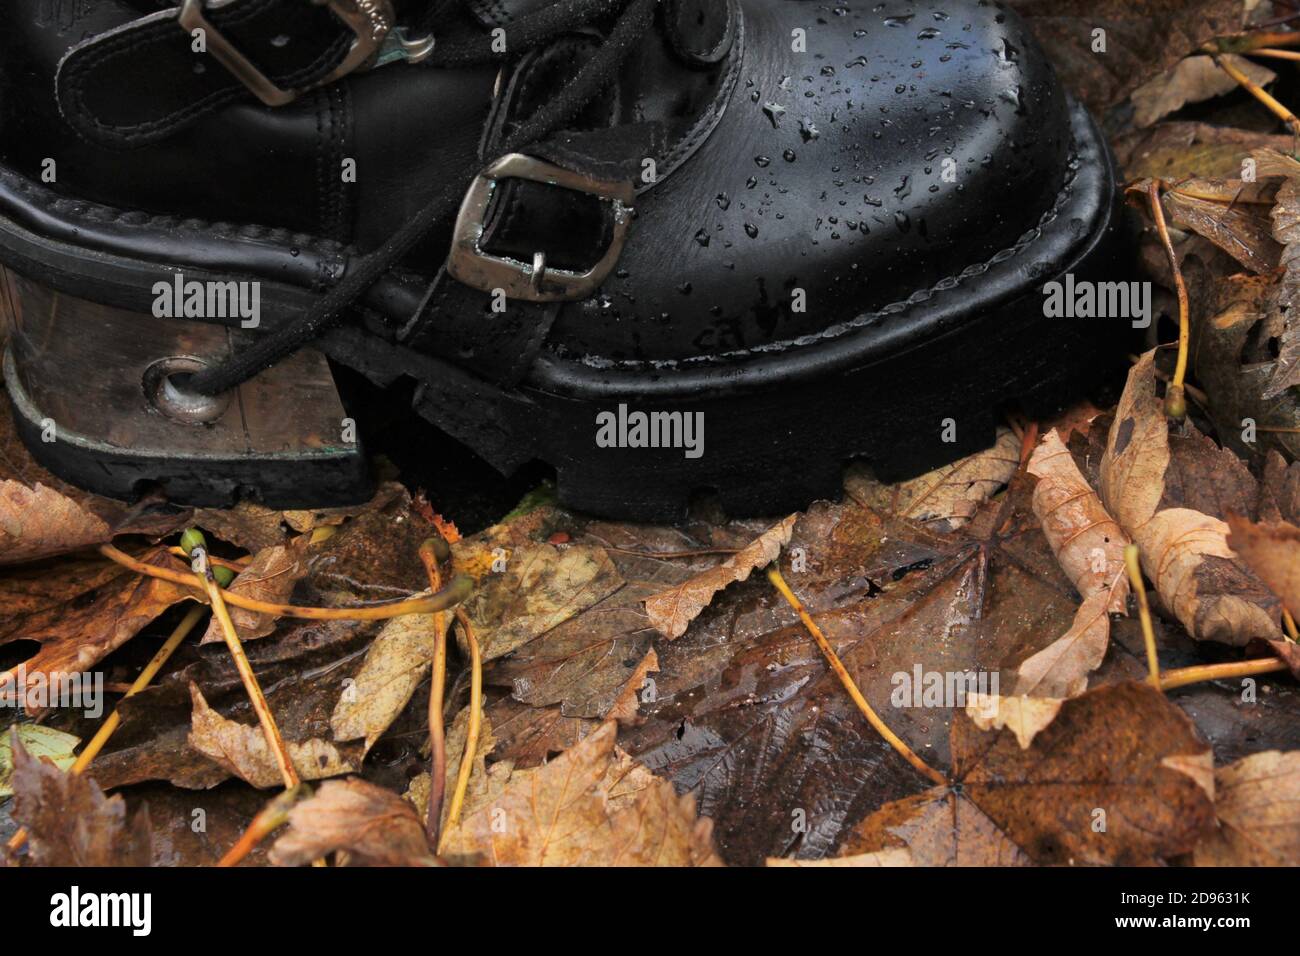 primo piano di uno stivale nero con tacco argentato su foglie cadute Foto Stock